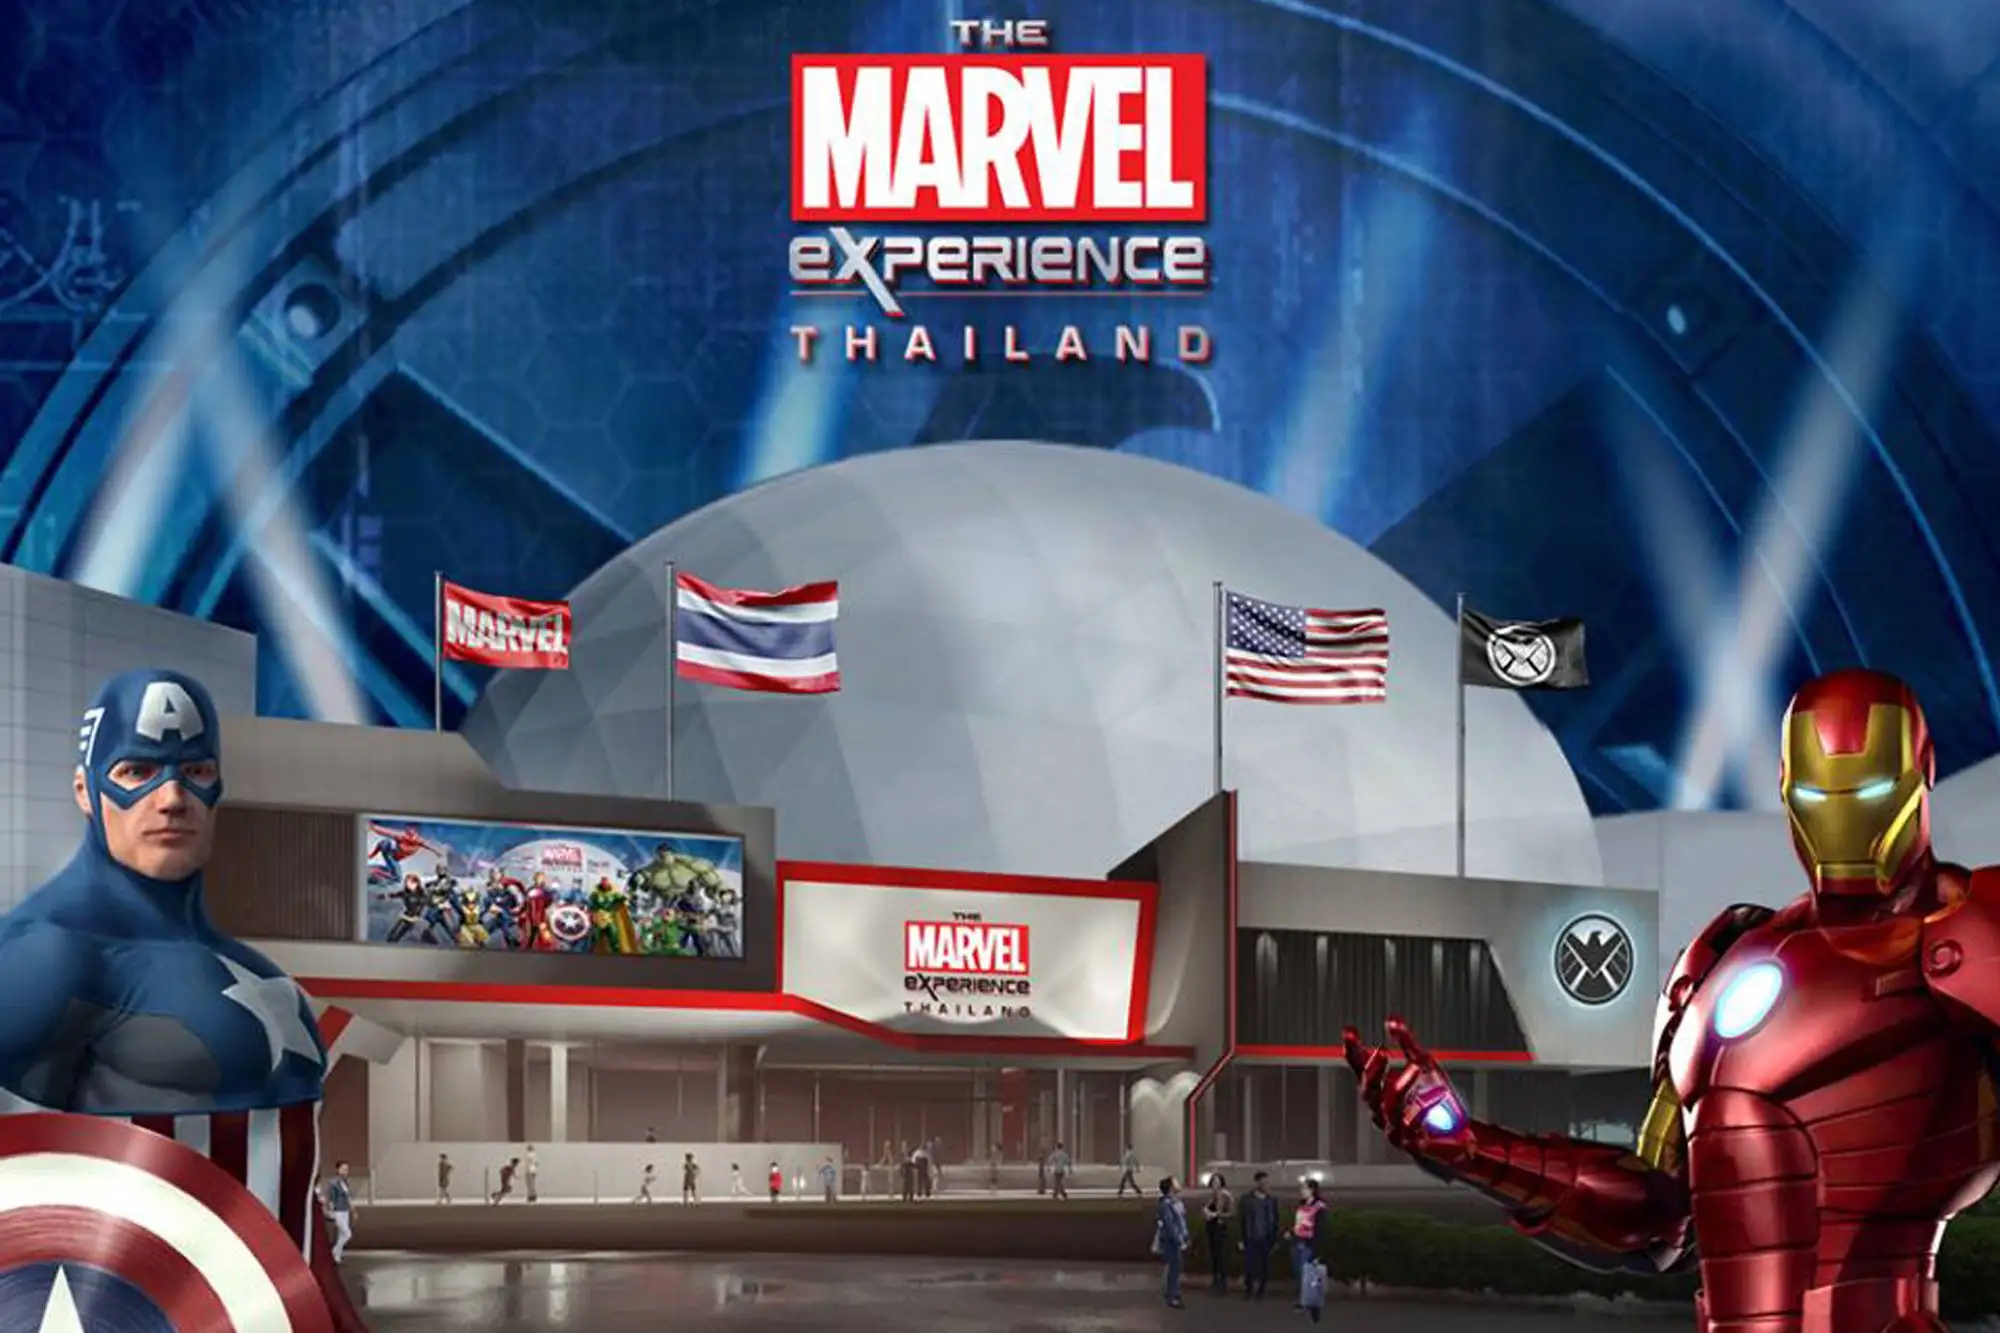 泰國超級英雄體驗館The Marvel Experience Thailand 2018年第2季盛大開幕 規模號稱更勝美國 高科技互動設施體驗超逼真漫威世界